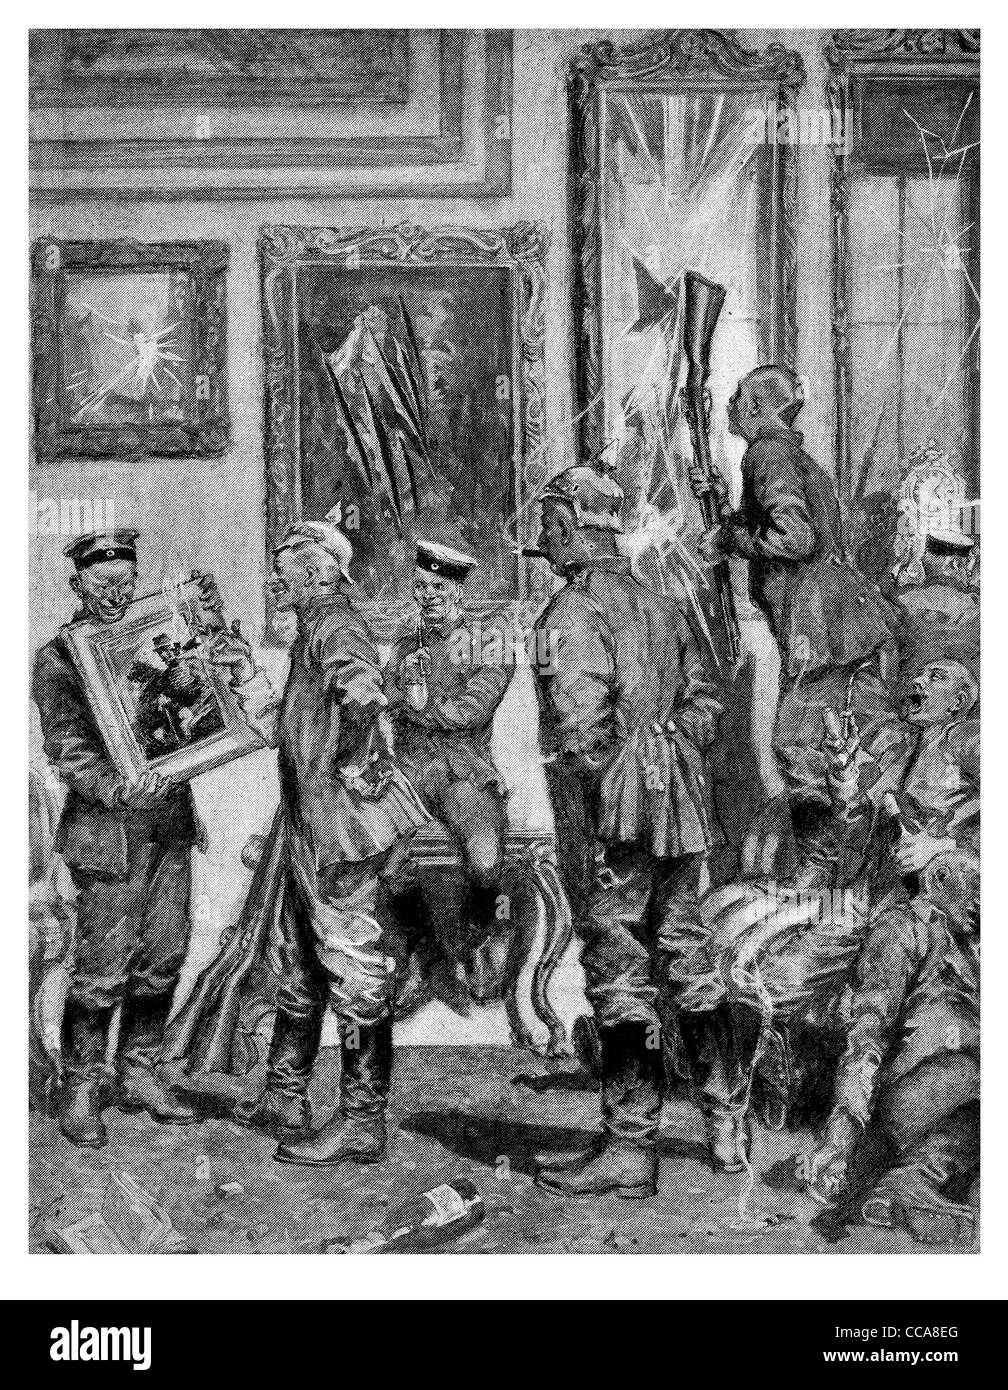 1914 pillage allemand voleur vol vol crime Chateux fine art français ivre ivre trésor foule criminelle peinture agent Banque D'Images